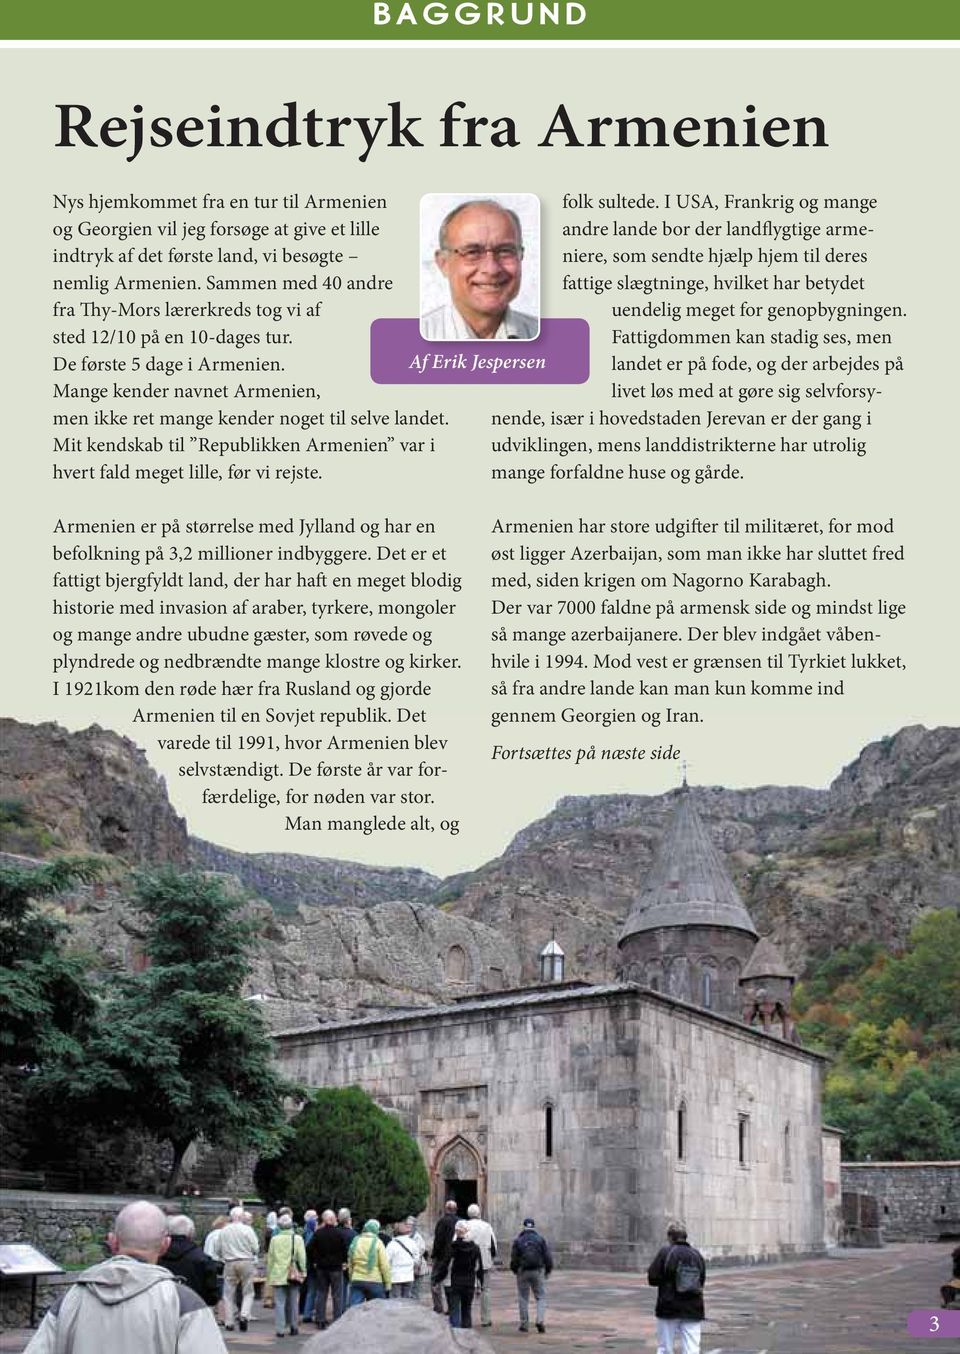 Mit kendskab til Republikken Armenien var i hvert fald meget lille, før vi rejste. Af Erik Jespersen folk sultede.